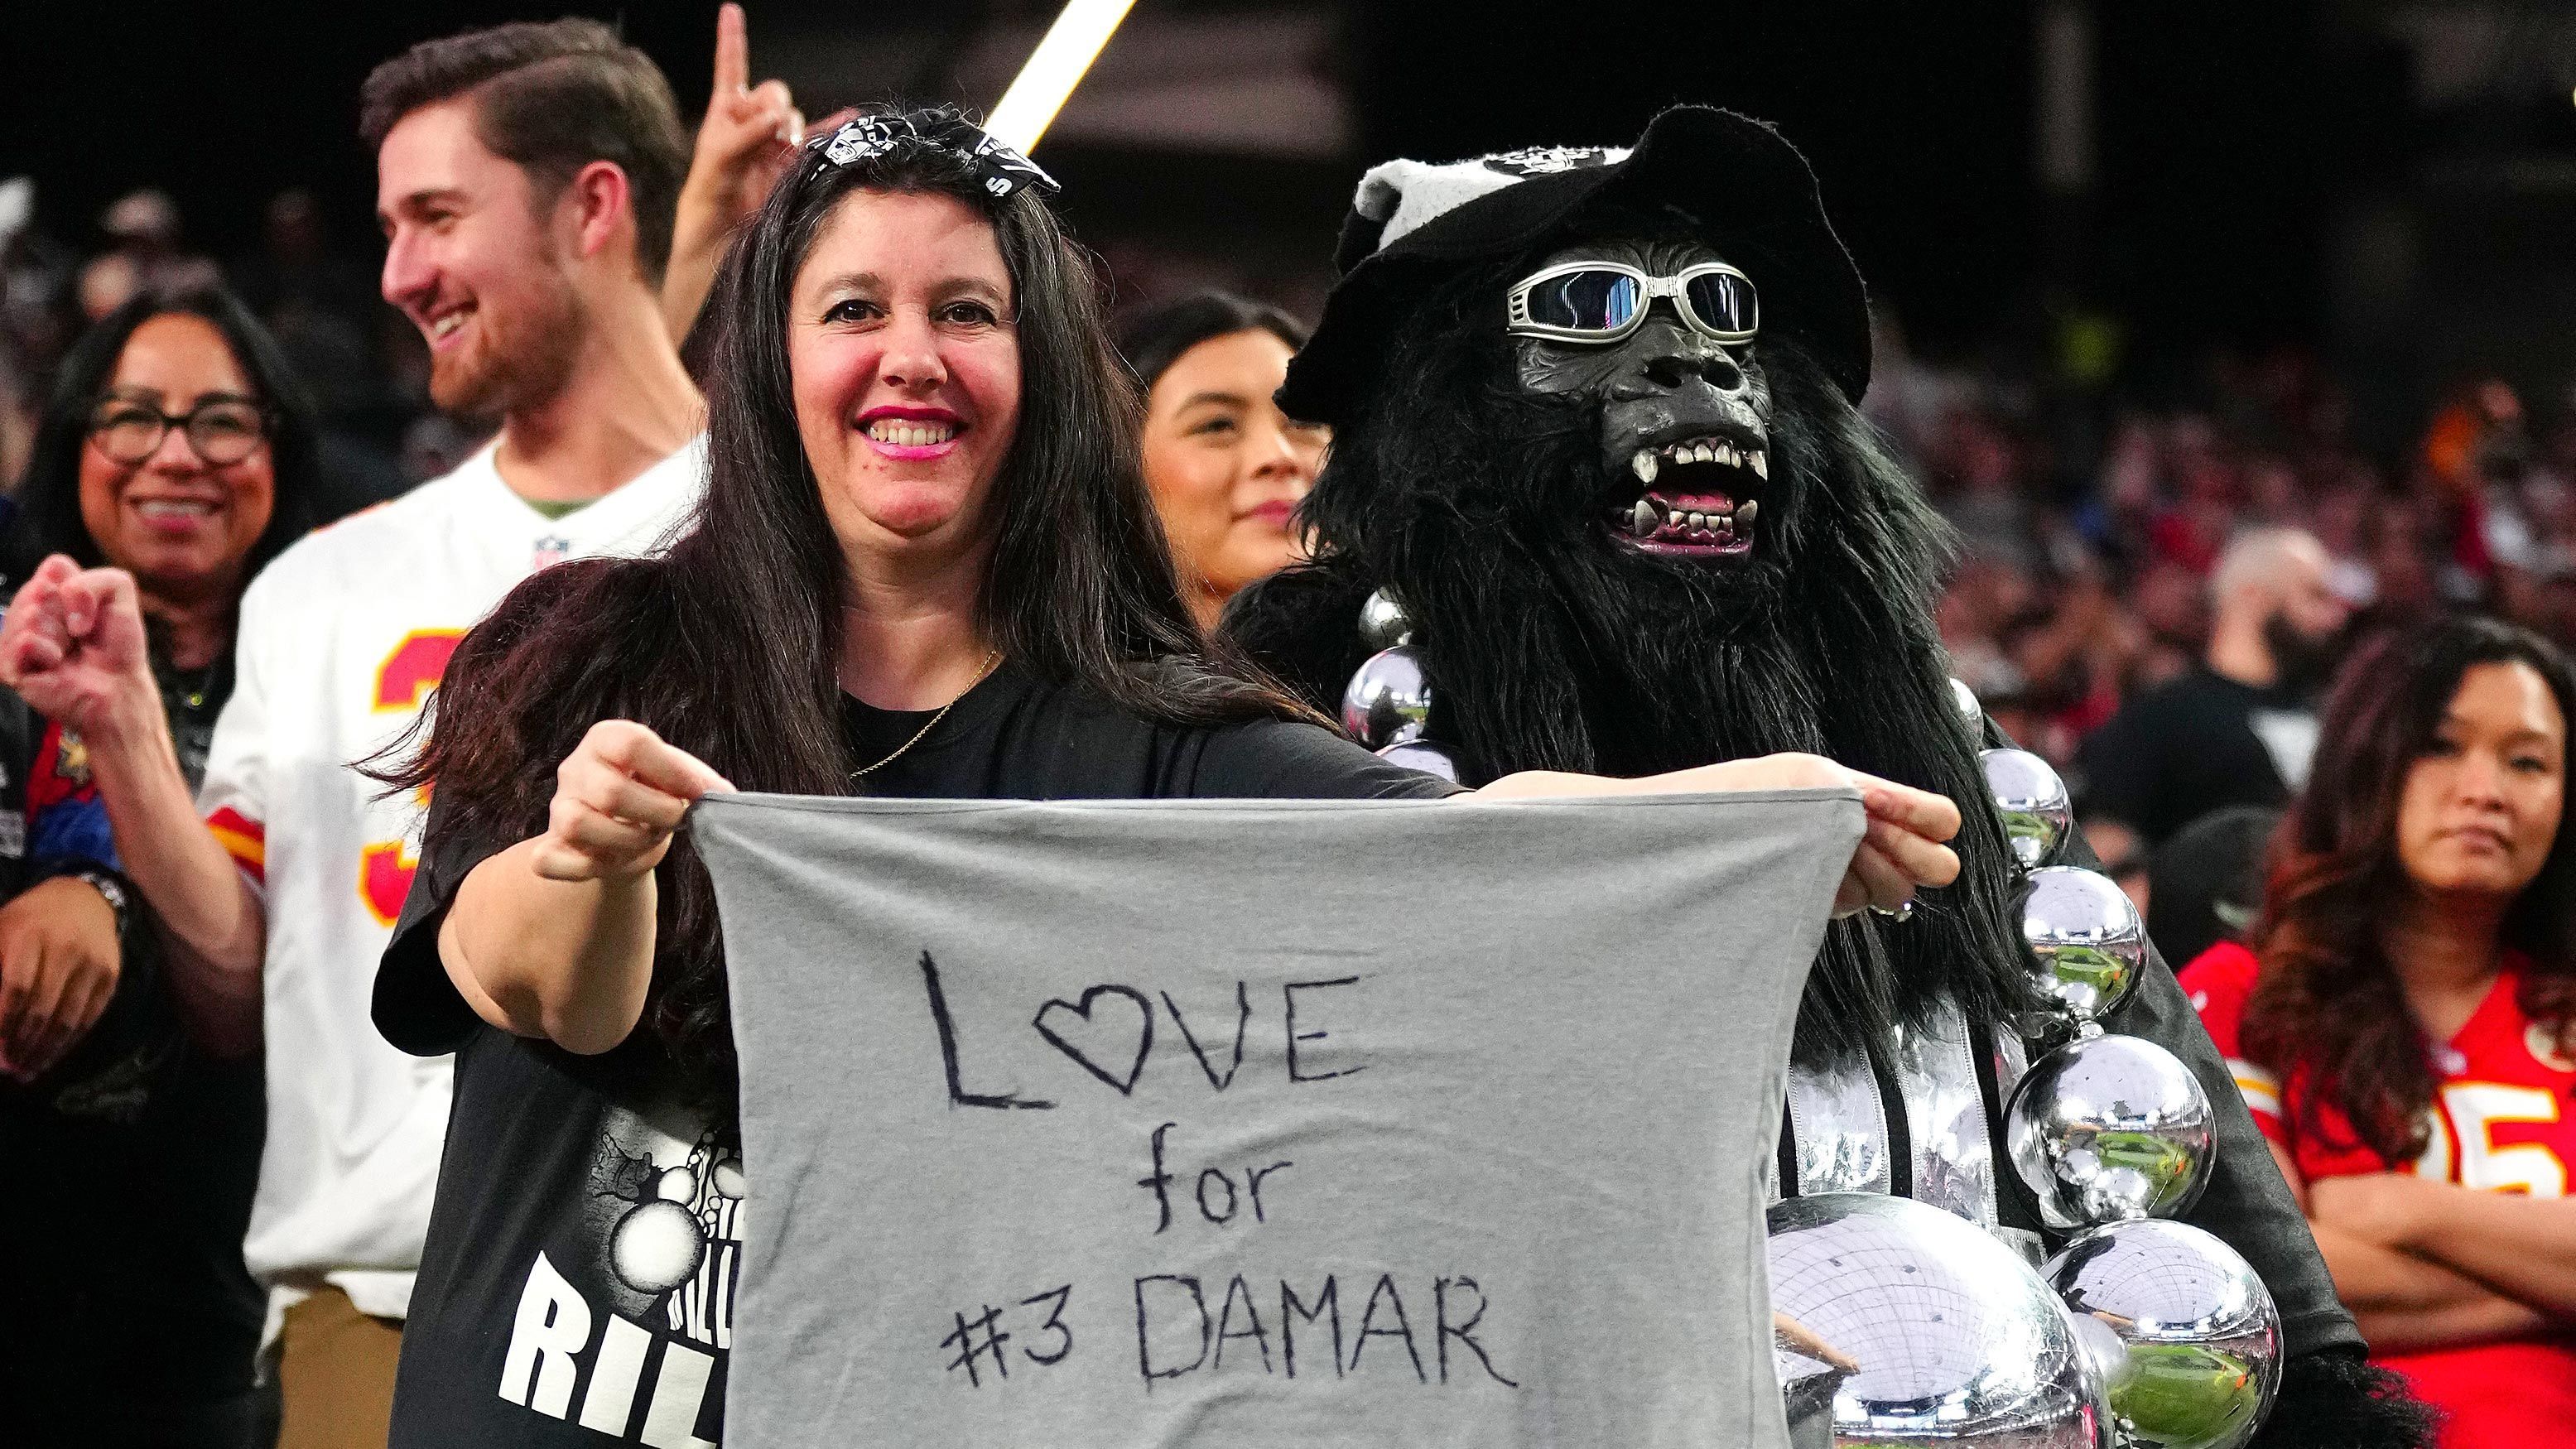 
                <strong>Raiders-Fans</strong><br>
                Neben den Spielern gab es auch schöne Aktionen der Fans. Anhänger der Raiders präsentieren hier ein Banner mit der Aufschrift "Love For #3 Damar".
              